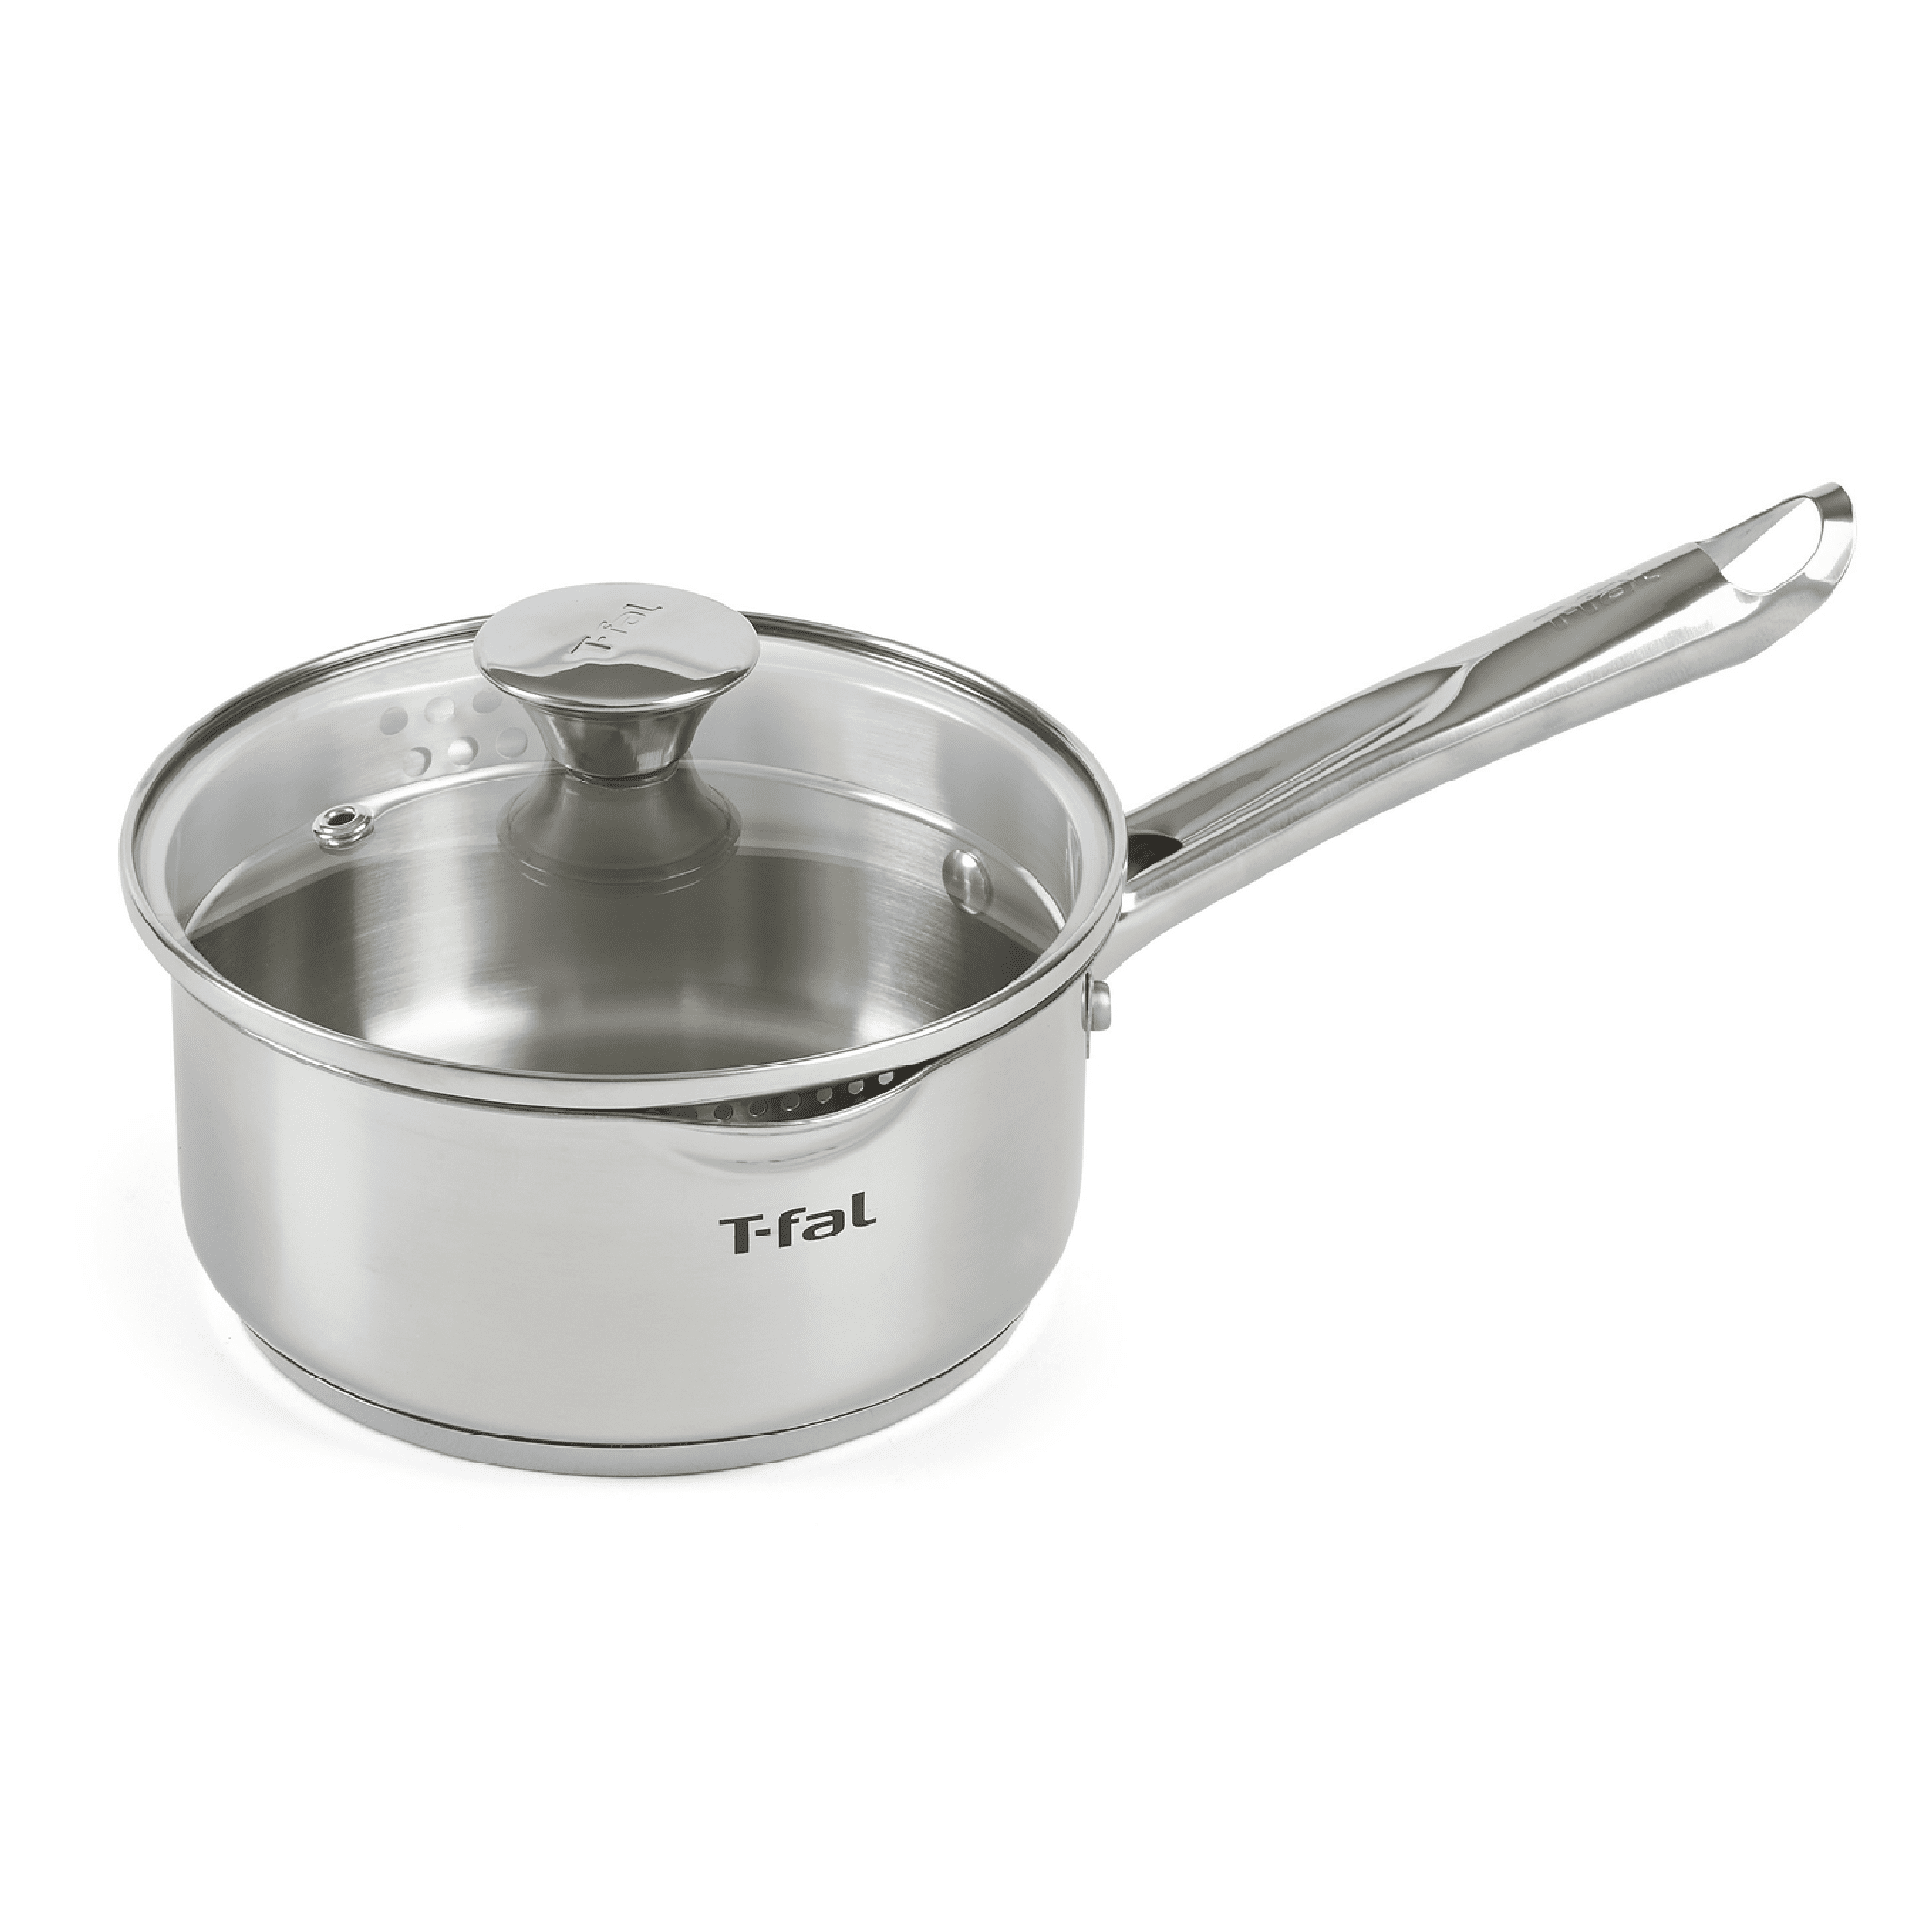 T-fal Nonstick Handy Pot Saucepan 3-Quart with Glass Lid Cookware Boiling Steam 